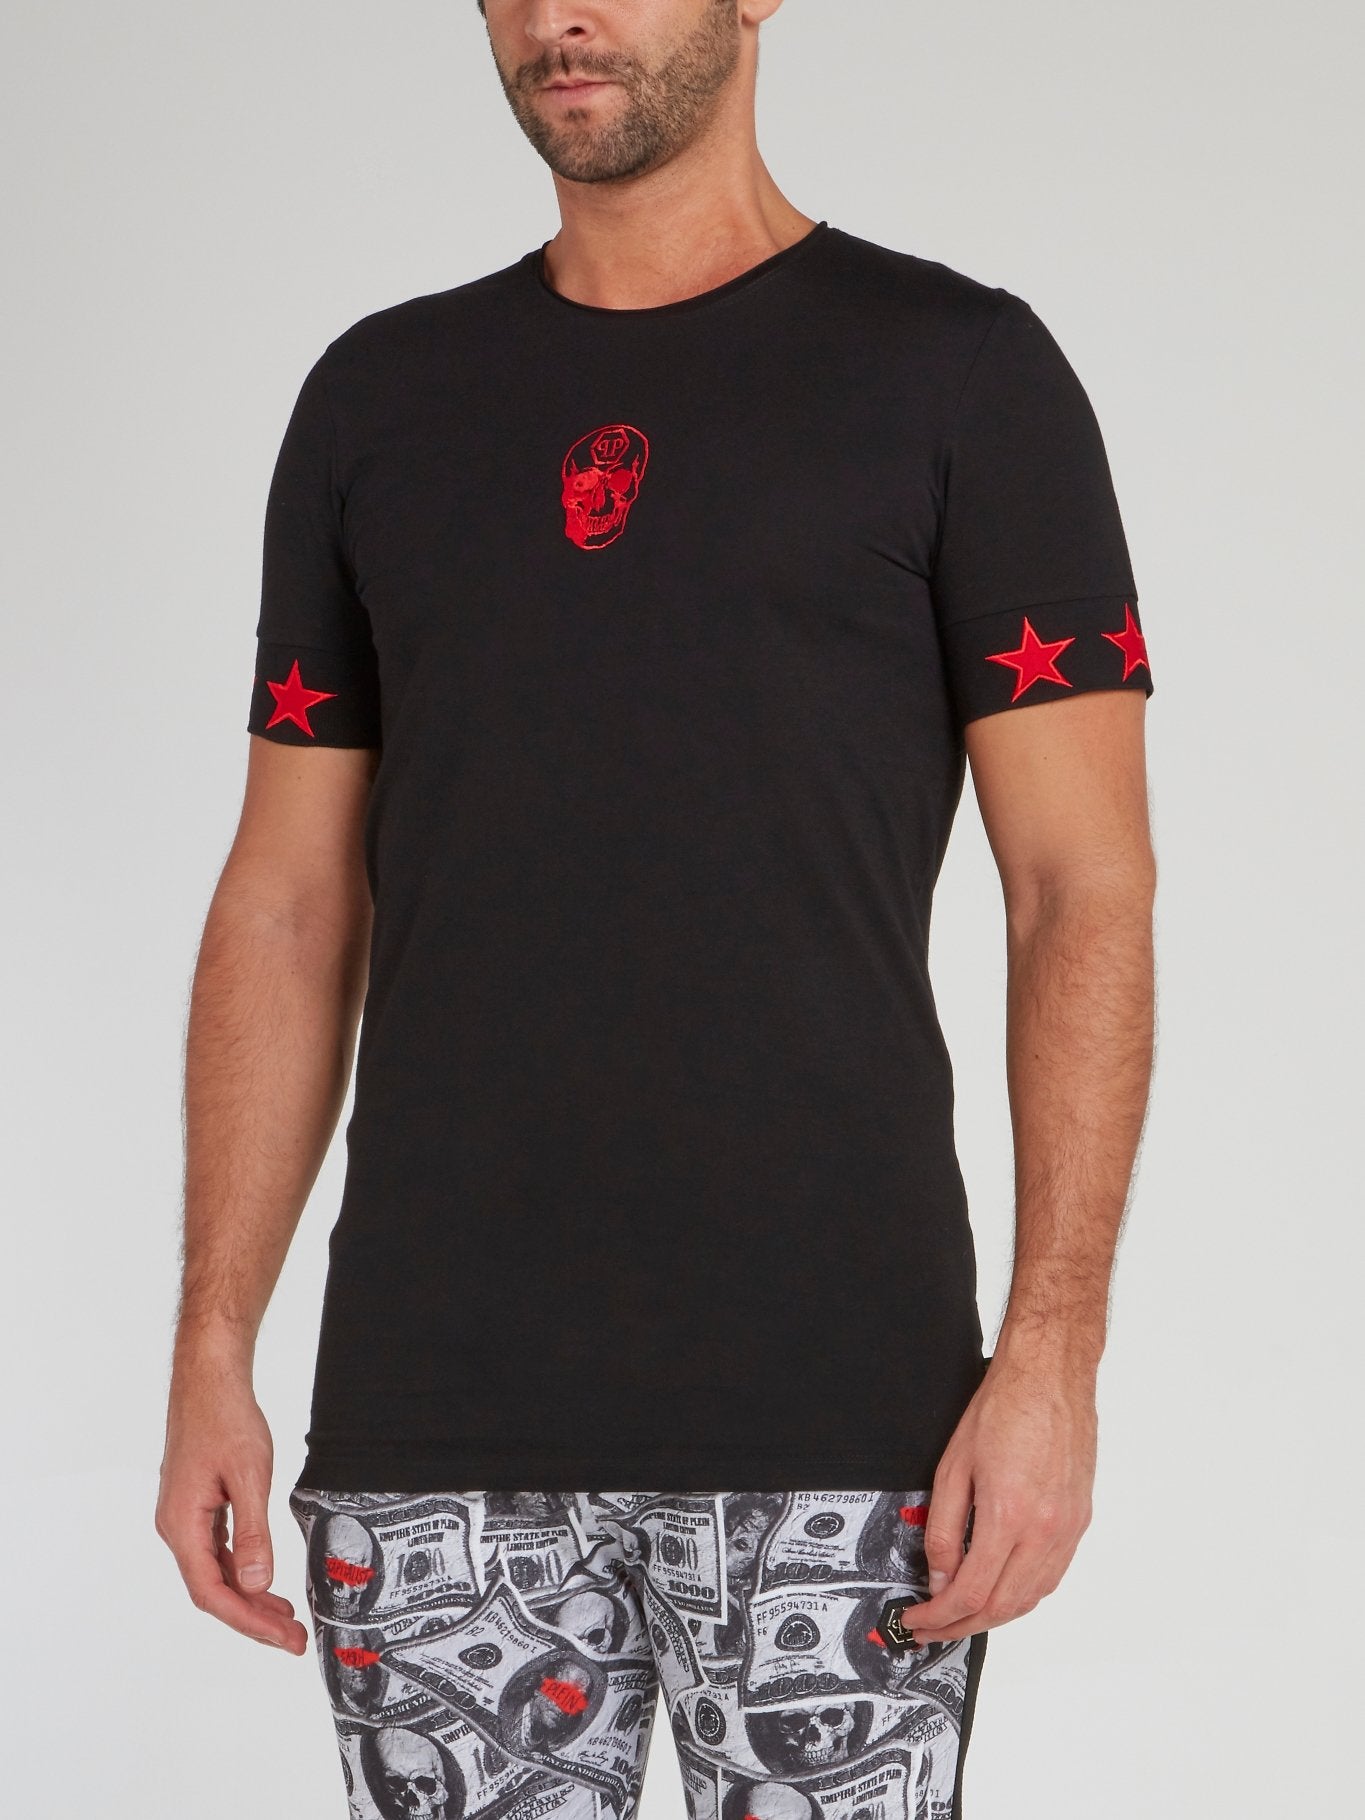 Черная футболка с красными звездами и черепом